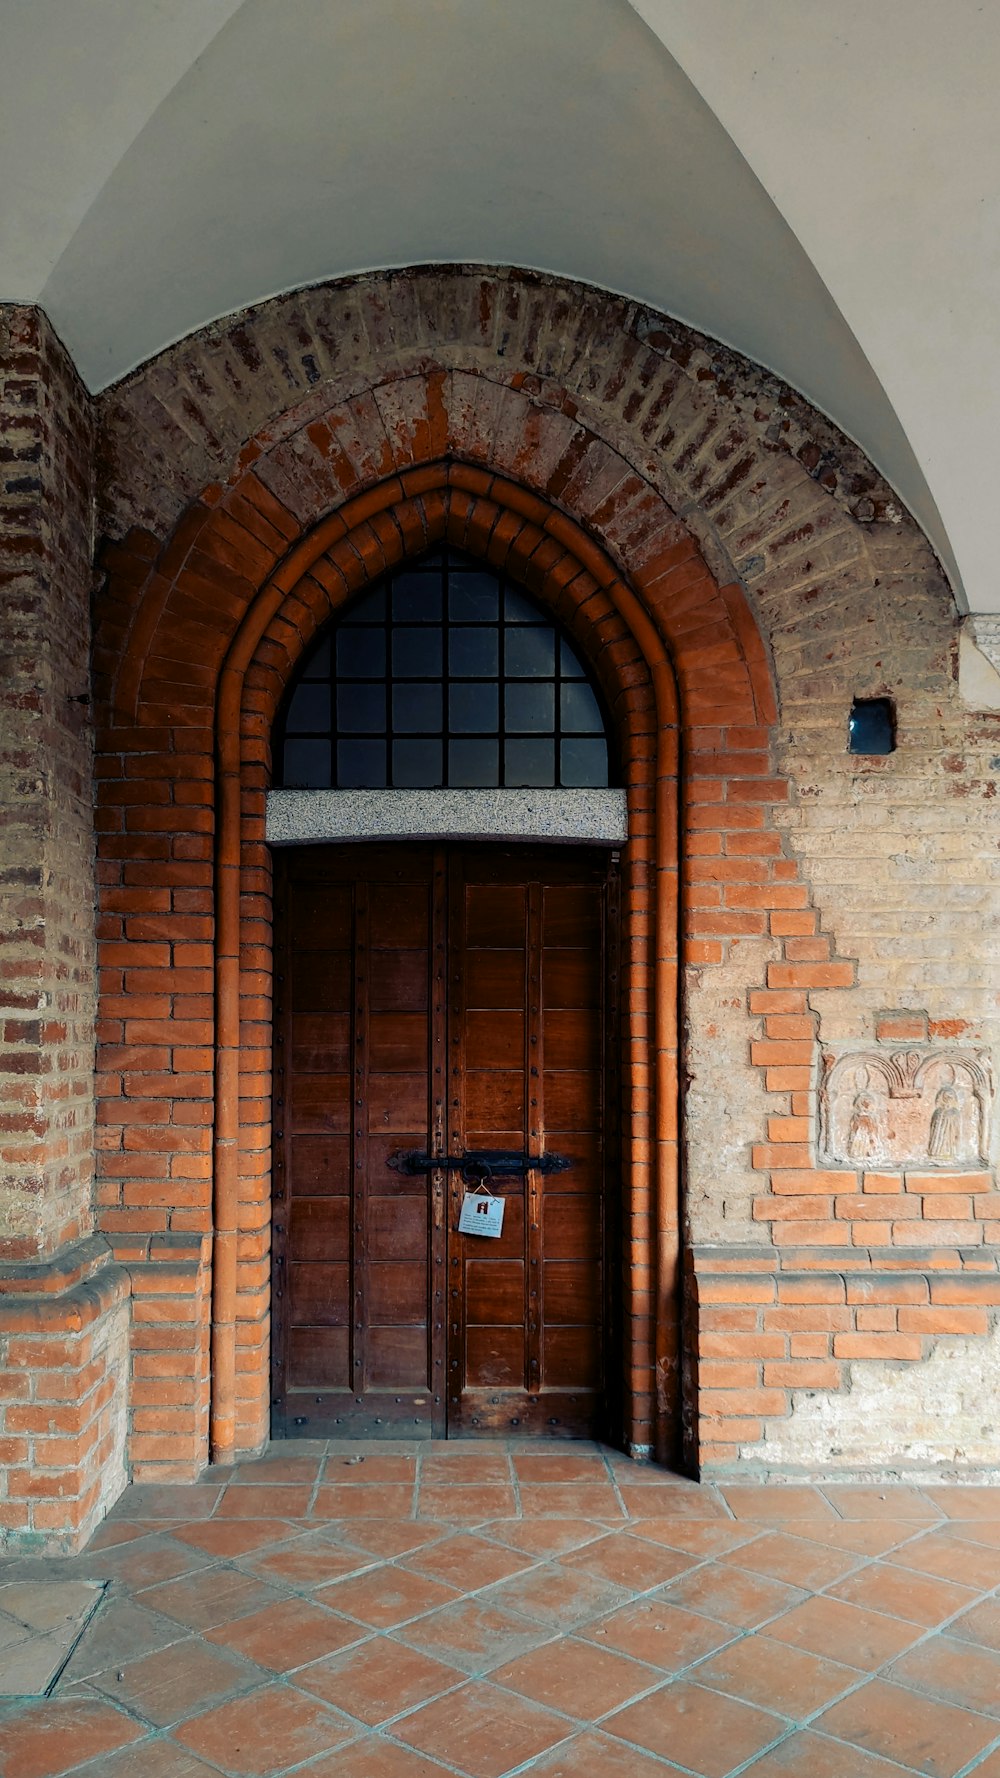 ドアに十字架が描かれたアーチ型の出入り口